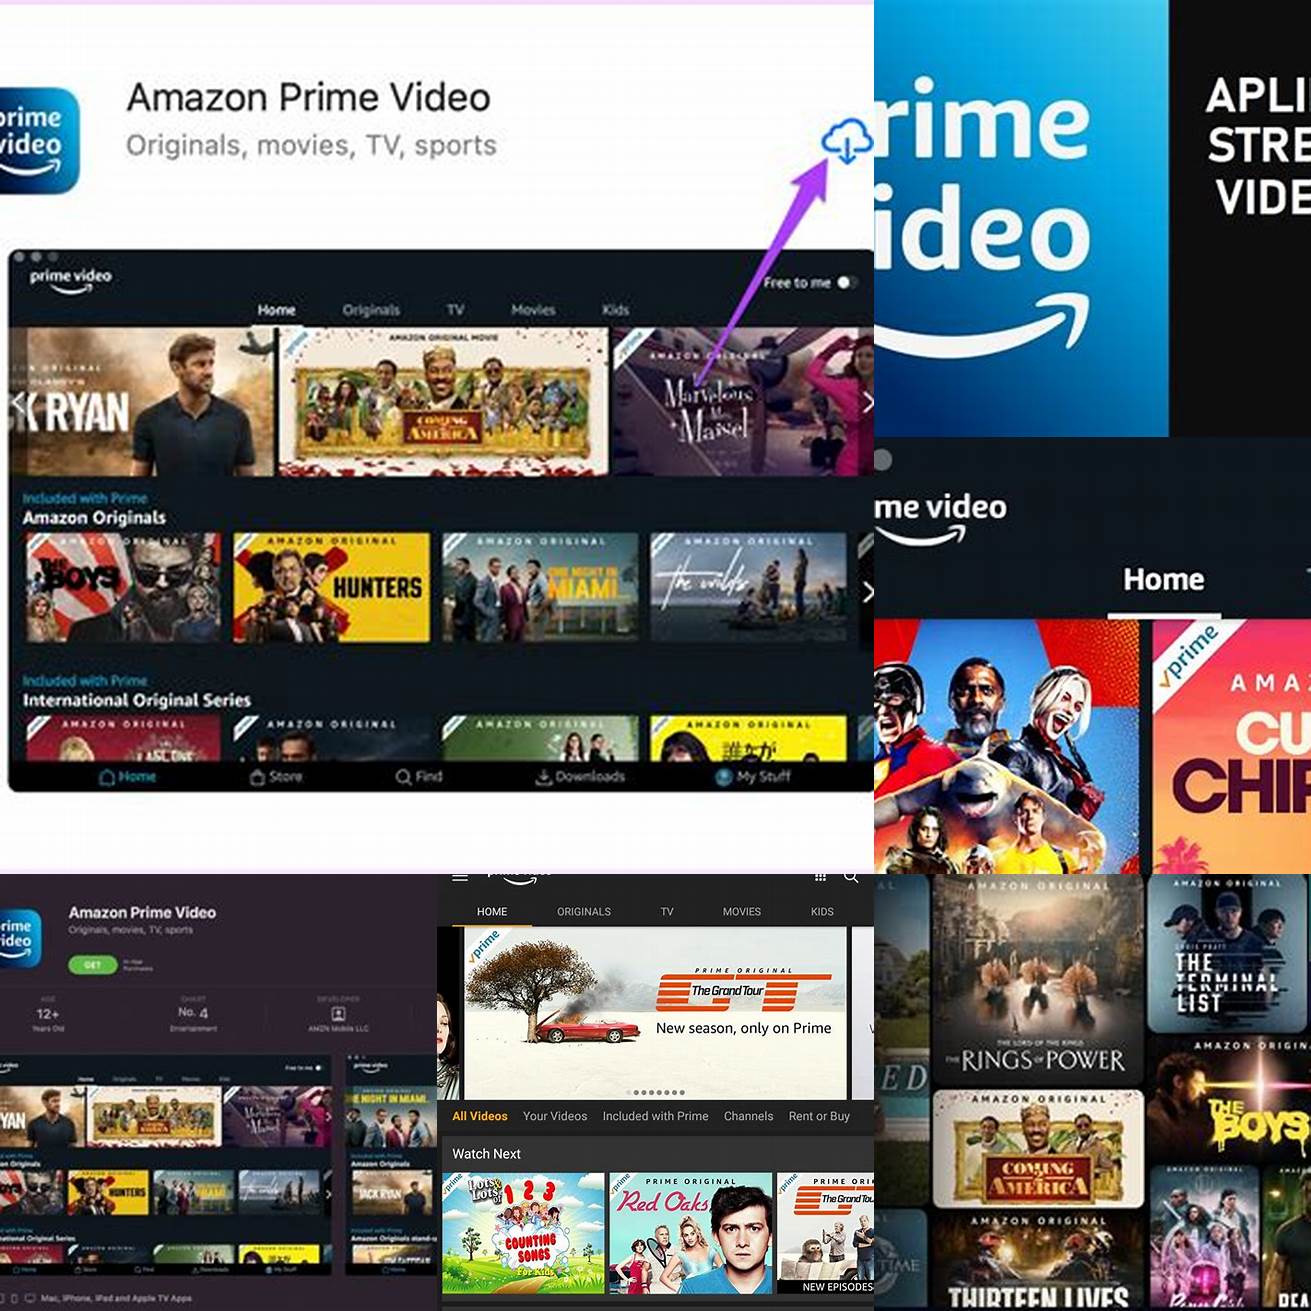 5 Amazon Prime Video